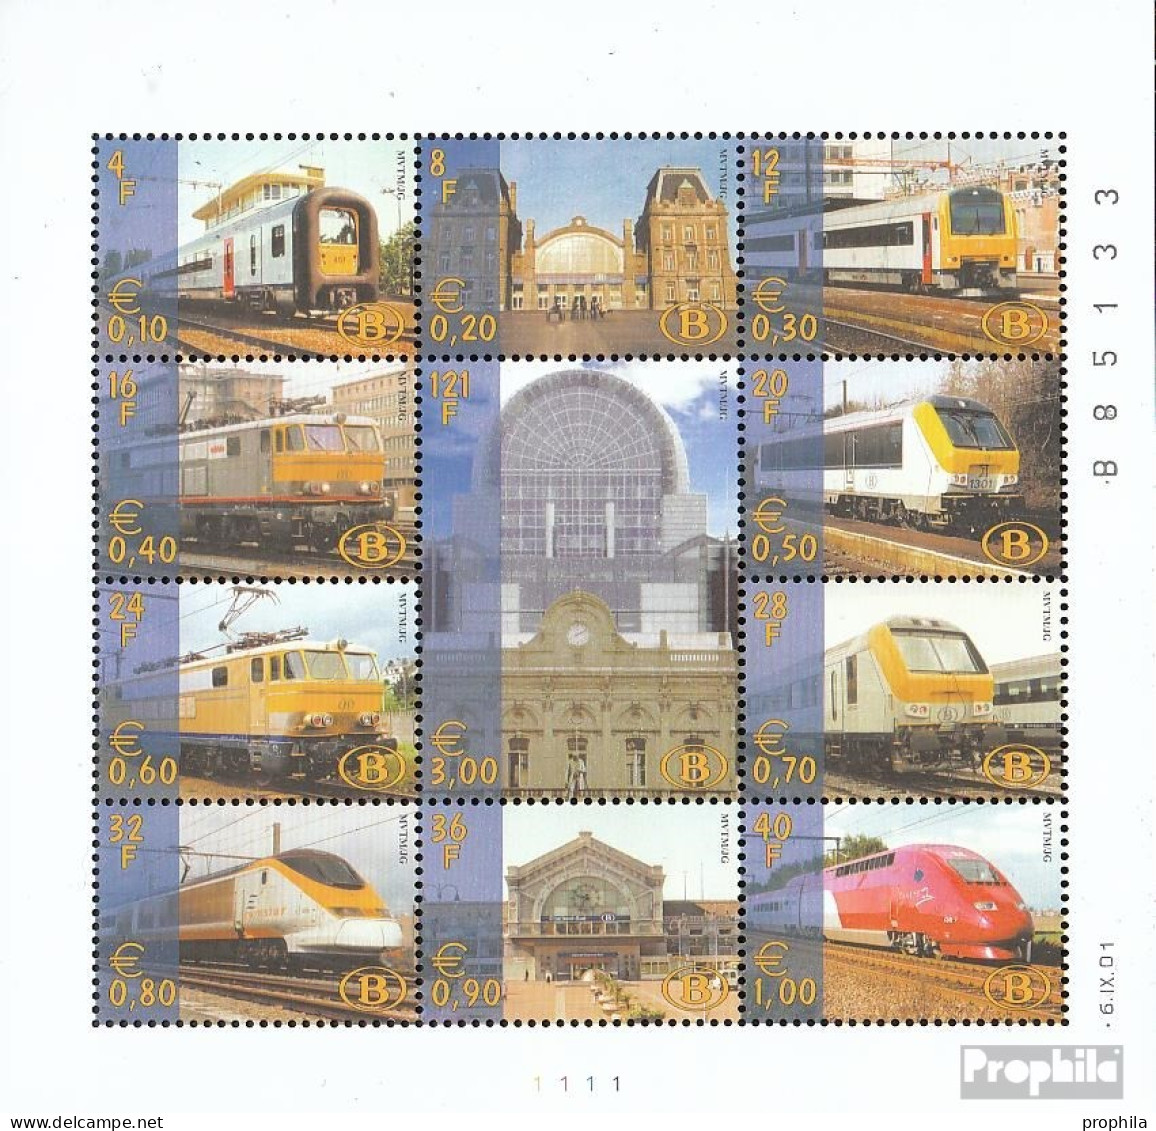 Belgien E Kleinbogen1/2001 (kompl.Ausg.) Postfrisch 2001 Eisenbahnmarke Privatausgabe - 1996-2013 Labels [TRV]